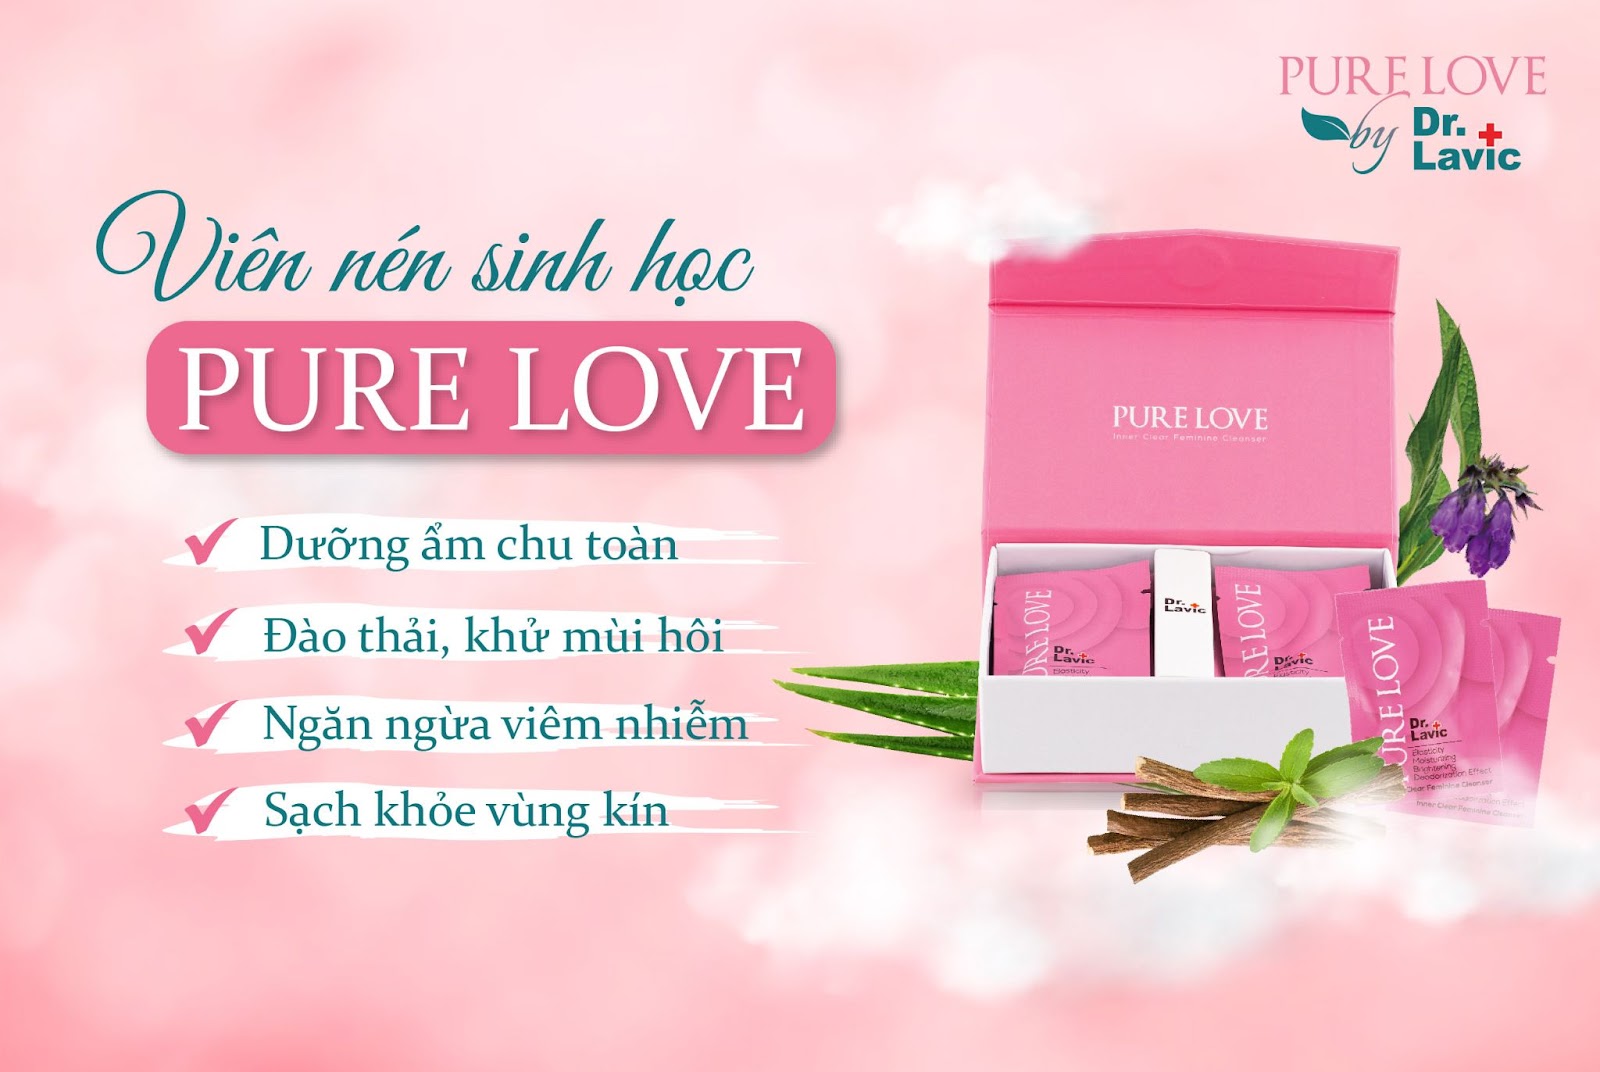 Pure Love chăm sóc vùng kín giúp phụ nữ tự tin, quyến rũ - 3